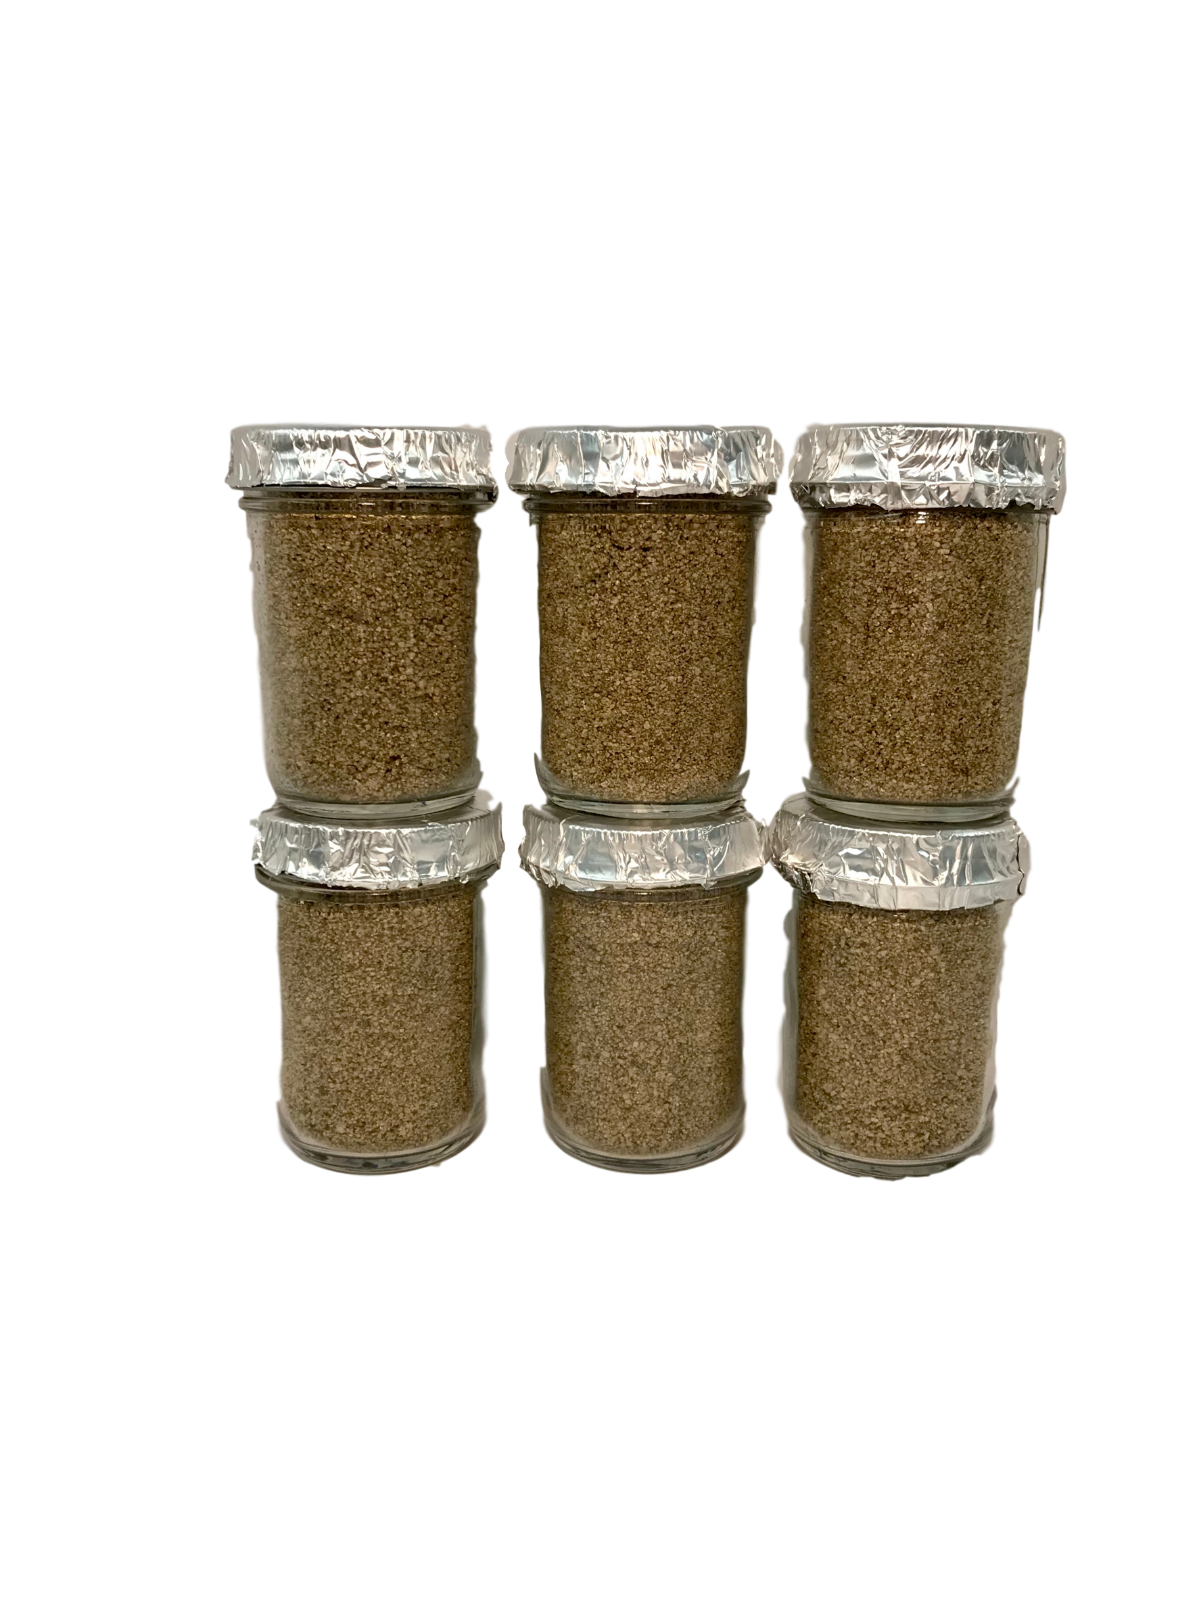 6 (six) Ultimate Half Pint Mushroom Substrate Jars,  Grow Mushrooms Fast!!